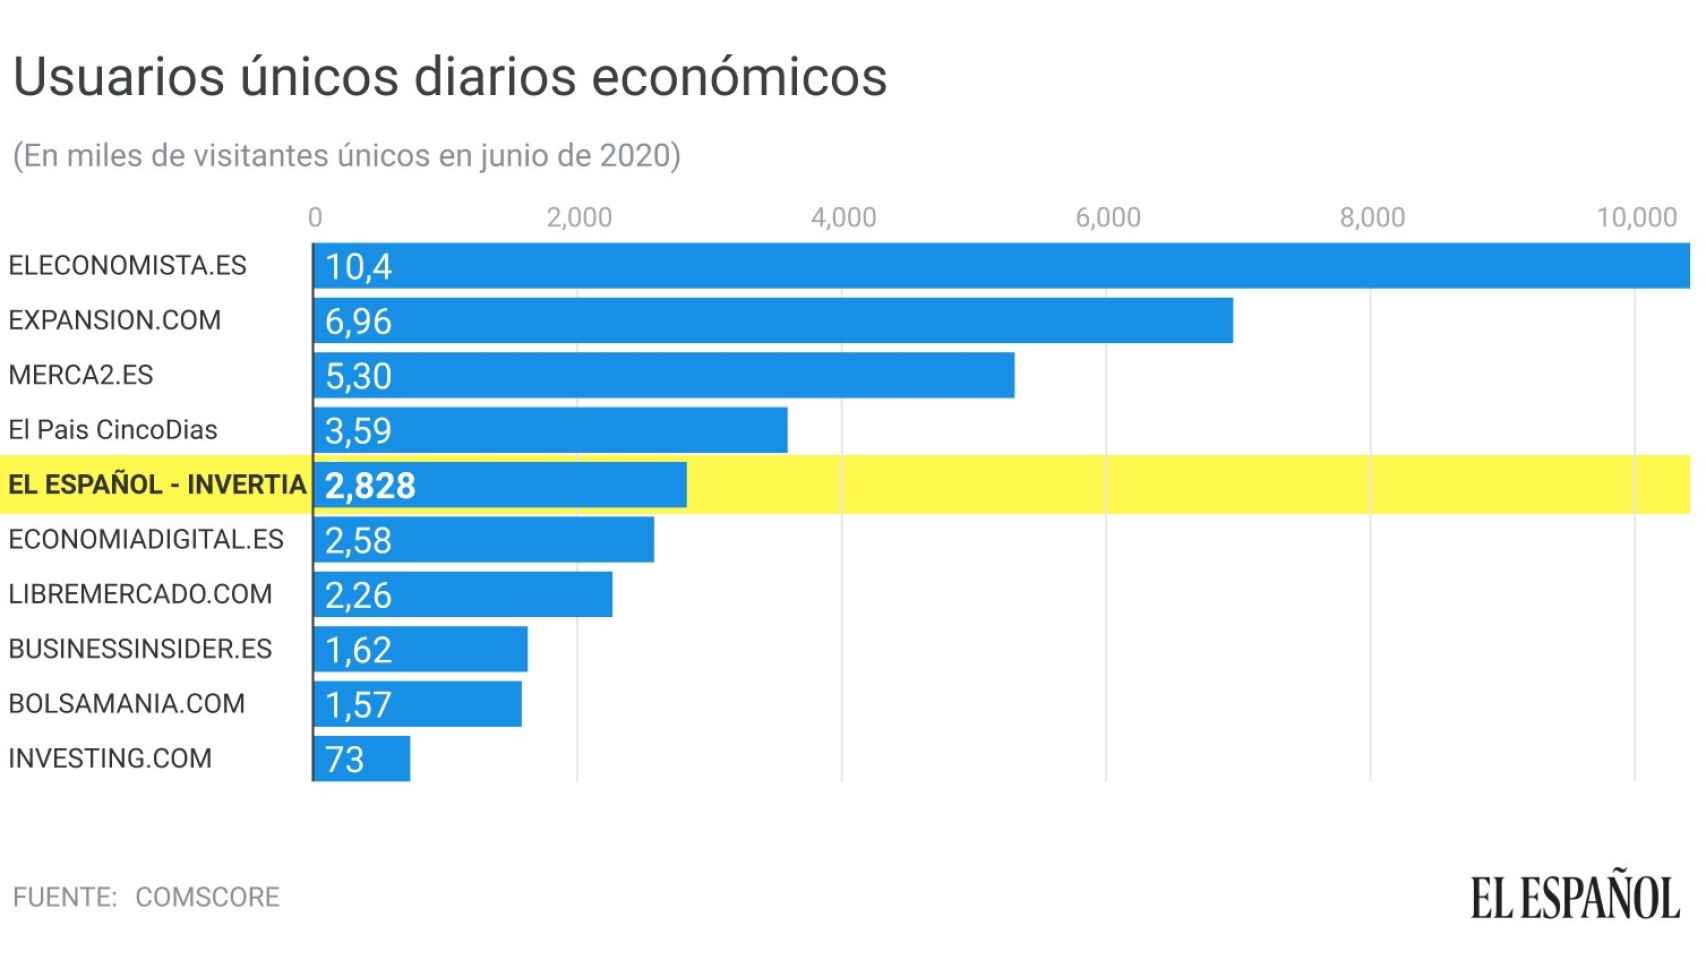 Usuarios únicos de la prensa económica española.